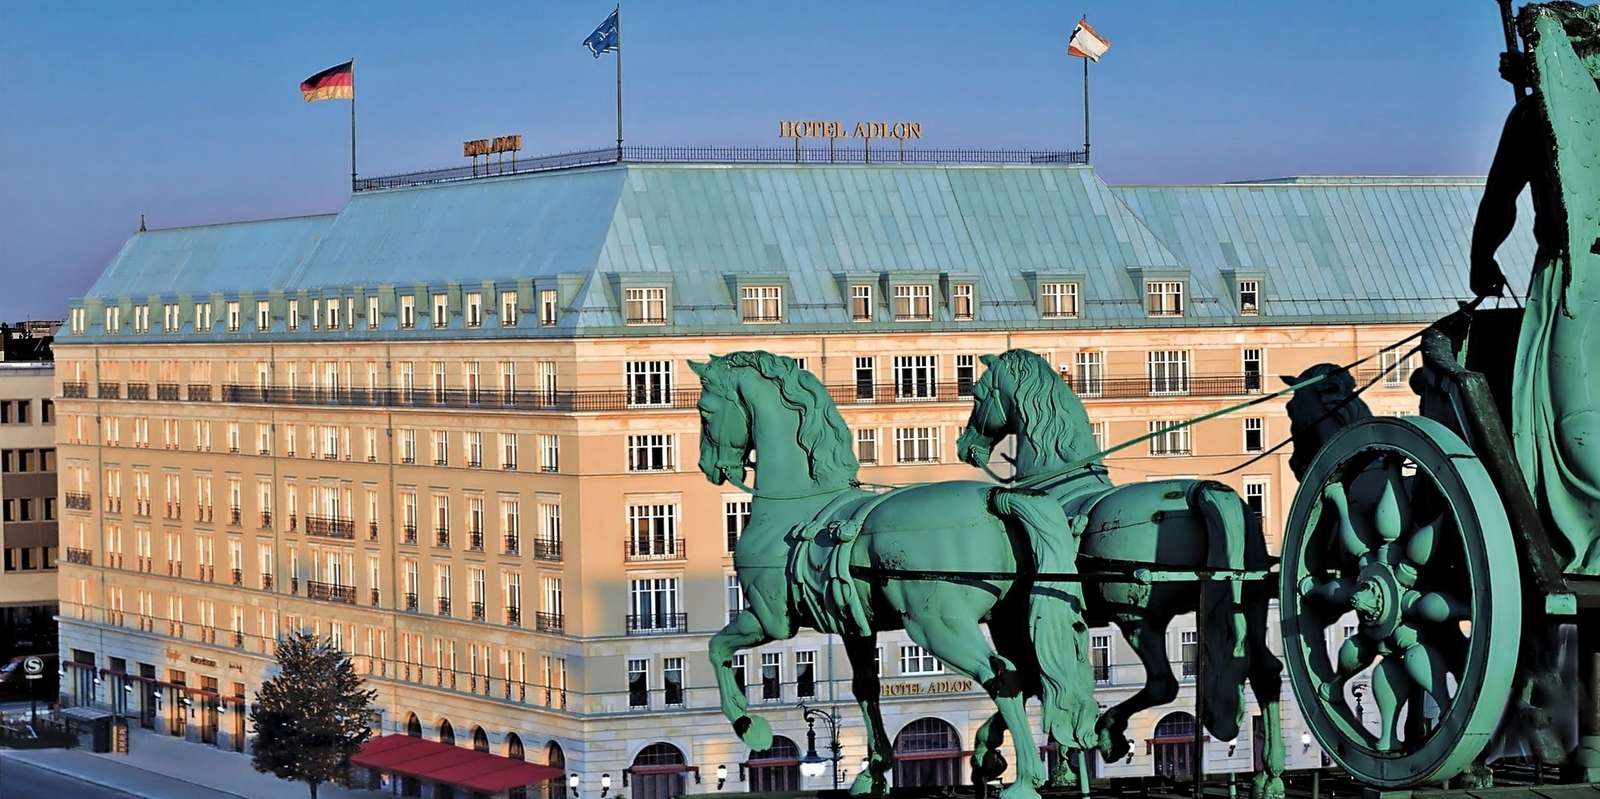 Duitsland-hotel online puzzel